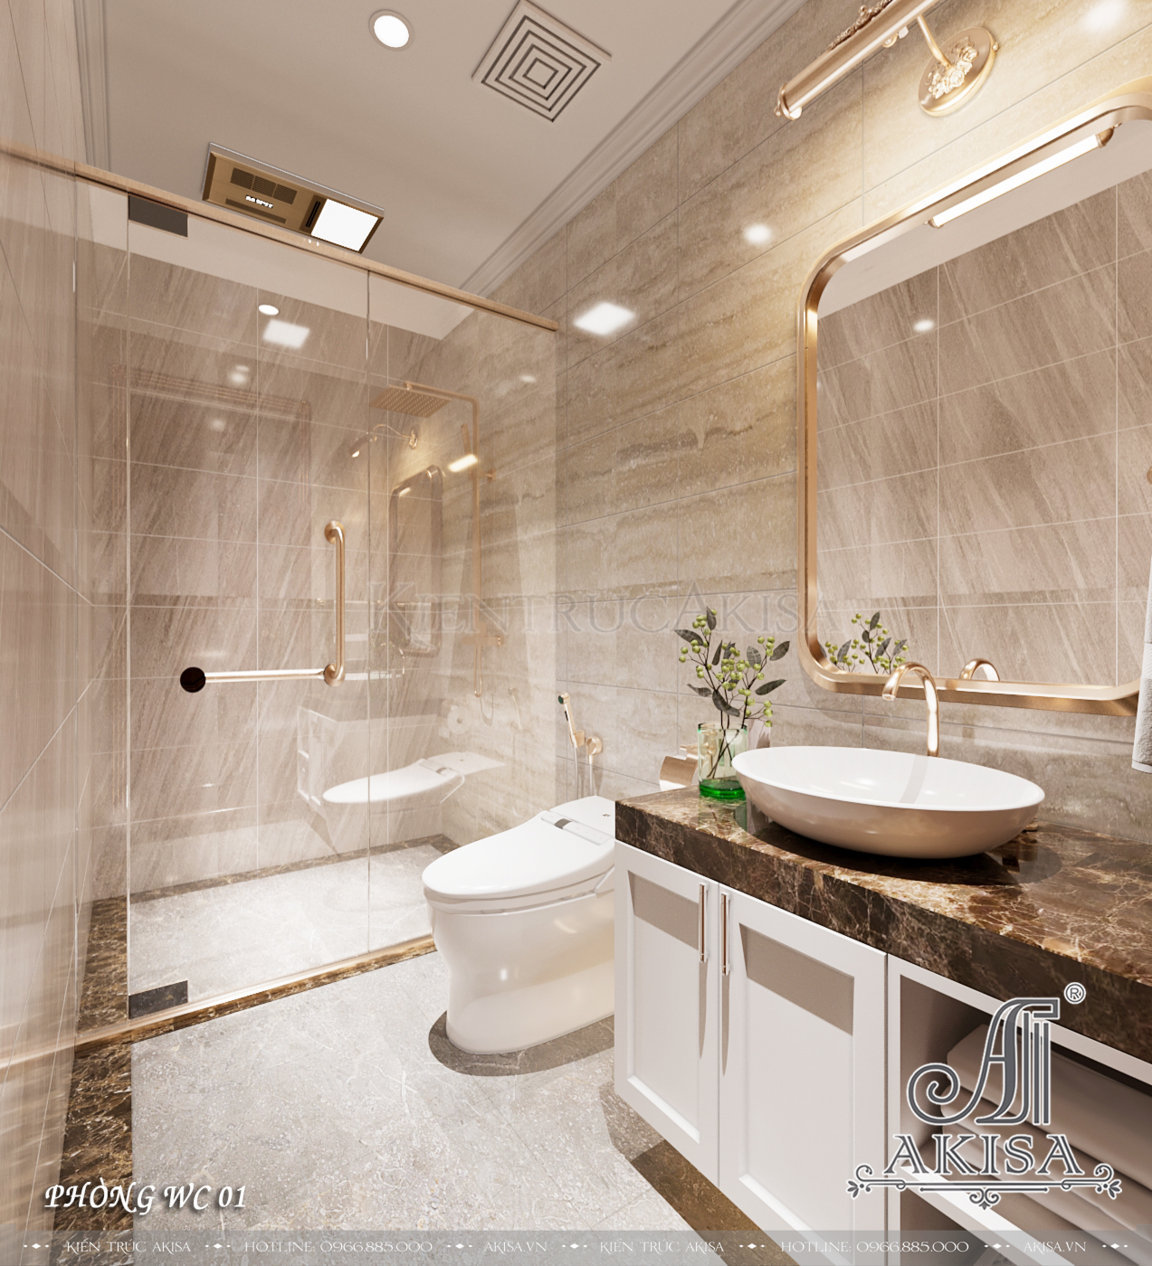 Thiết kế phòng tắm hiện đại với nội thất thông minh mang tới những trải nghiệm tiện nghi nhất